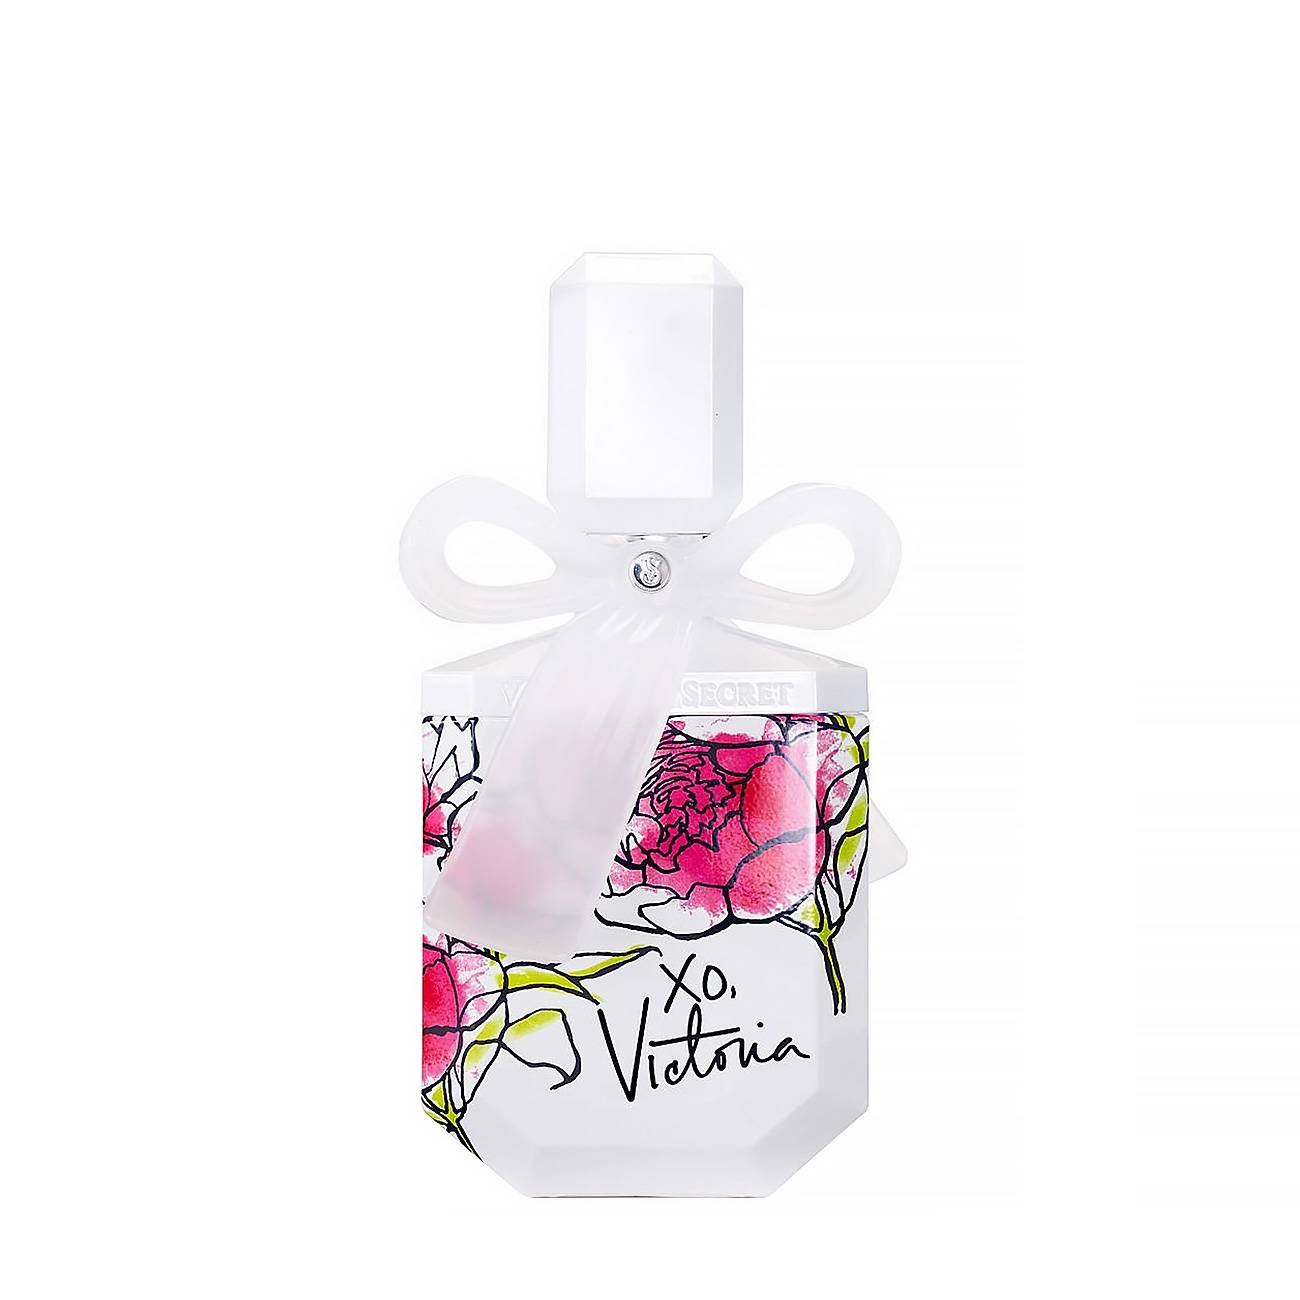 Apa de Parfum Victoria’s Secret XO VICTORIA 100ml cu comanda online